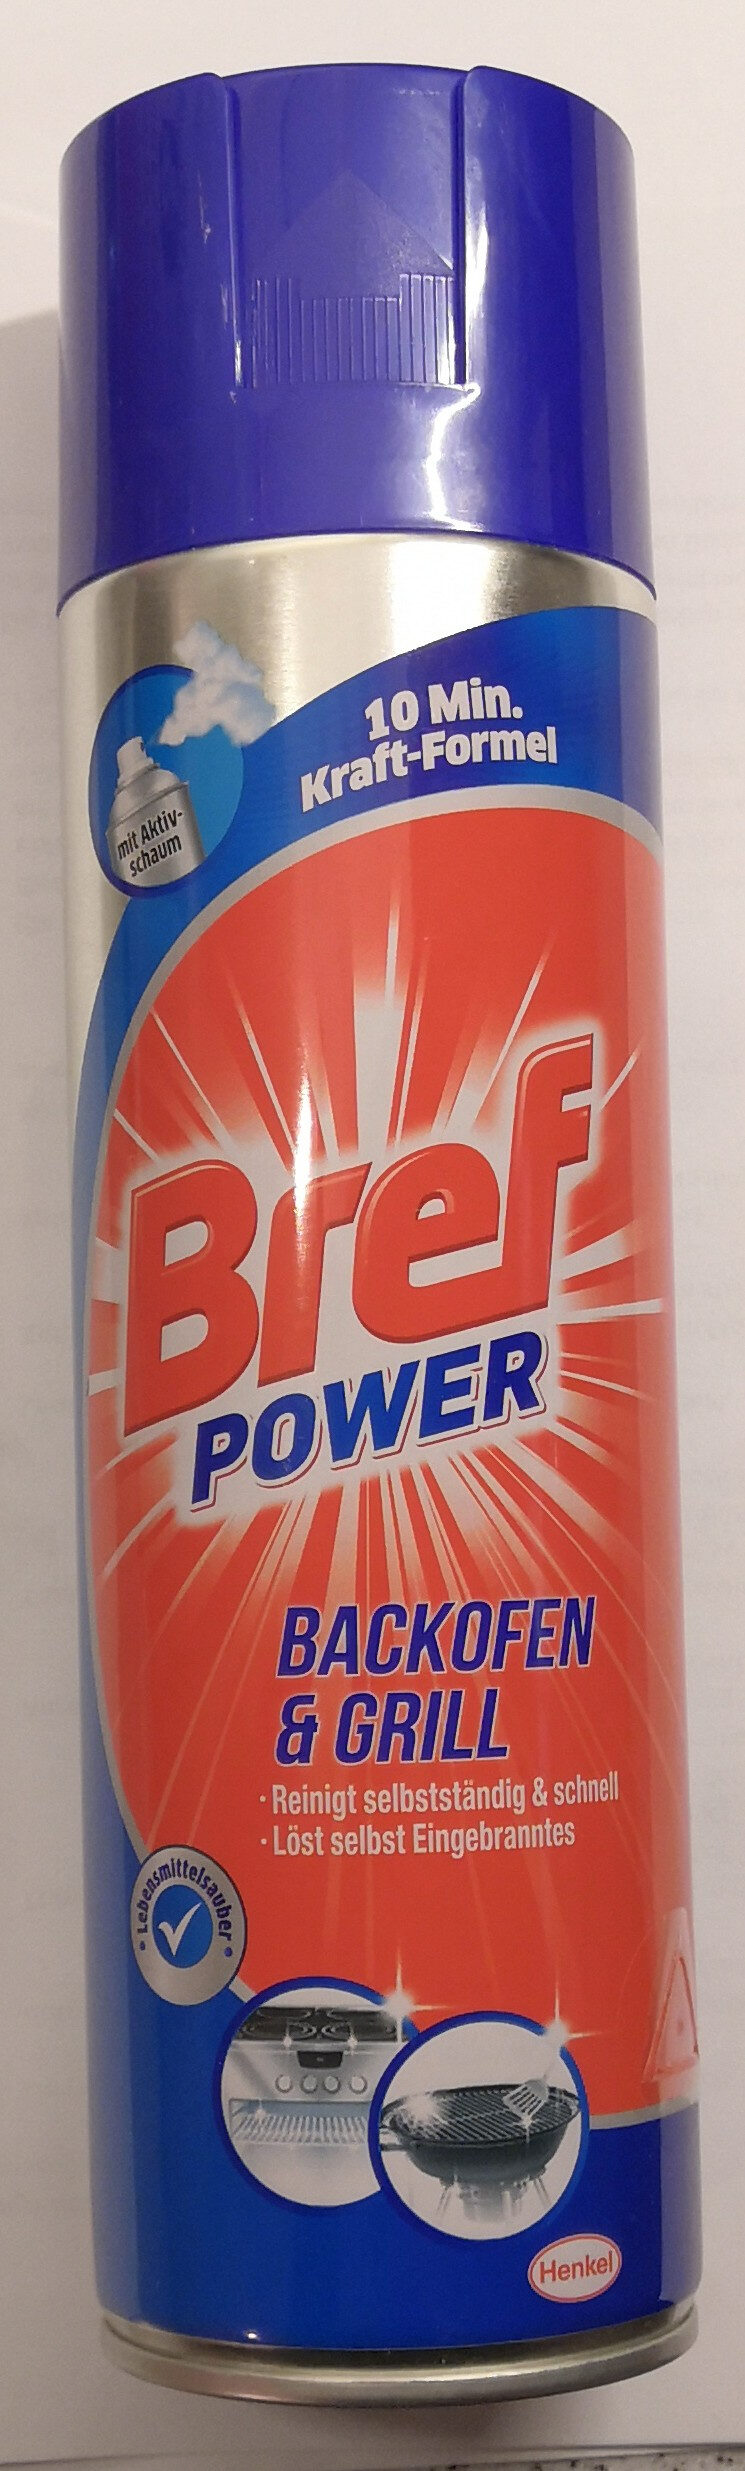 Bref Power Backofen & Grill - Produit - de